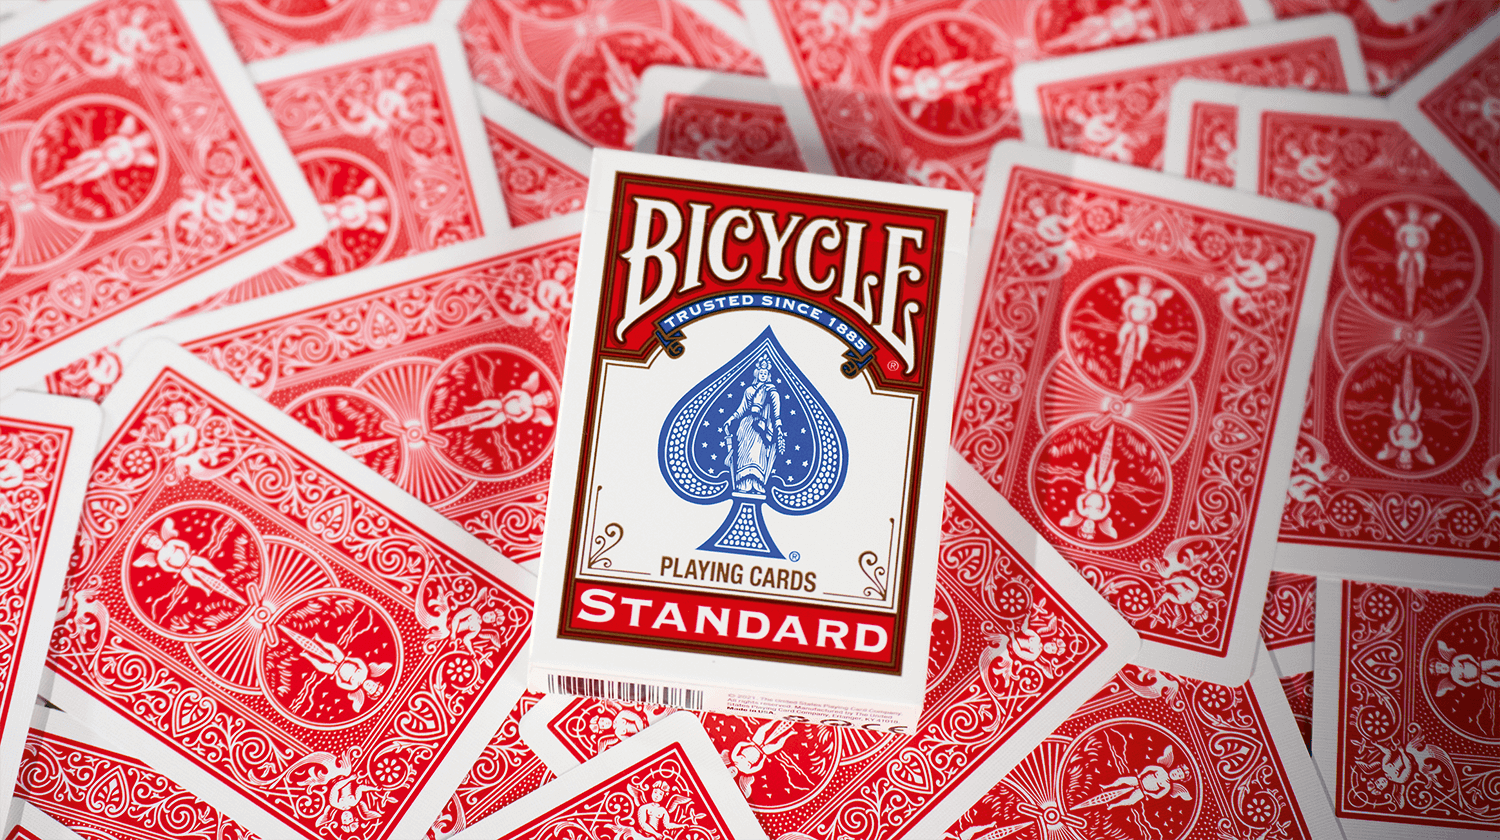 Eine Bicycle Trick Deck Double Back Red Rot Kartenschachtel liegt auf ausgebreiteten Kartenrückseiten.